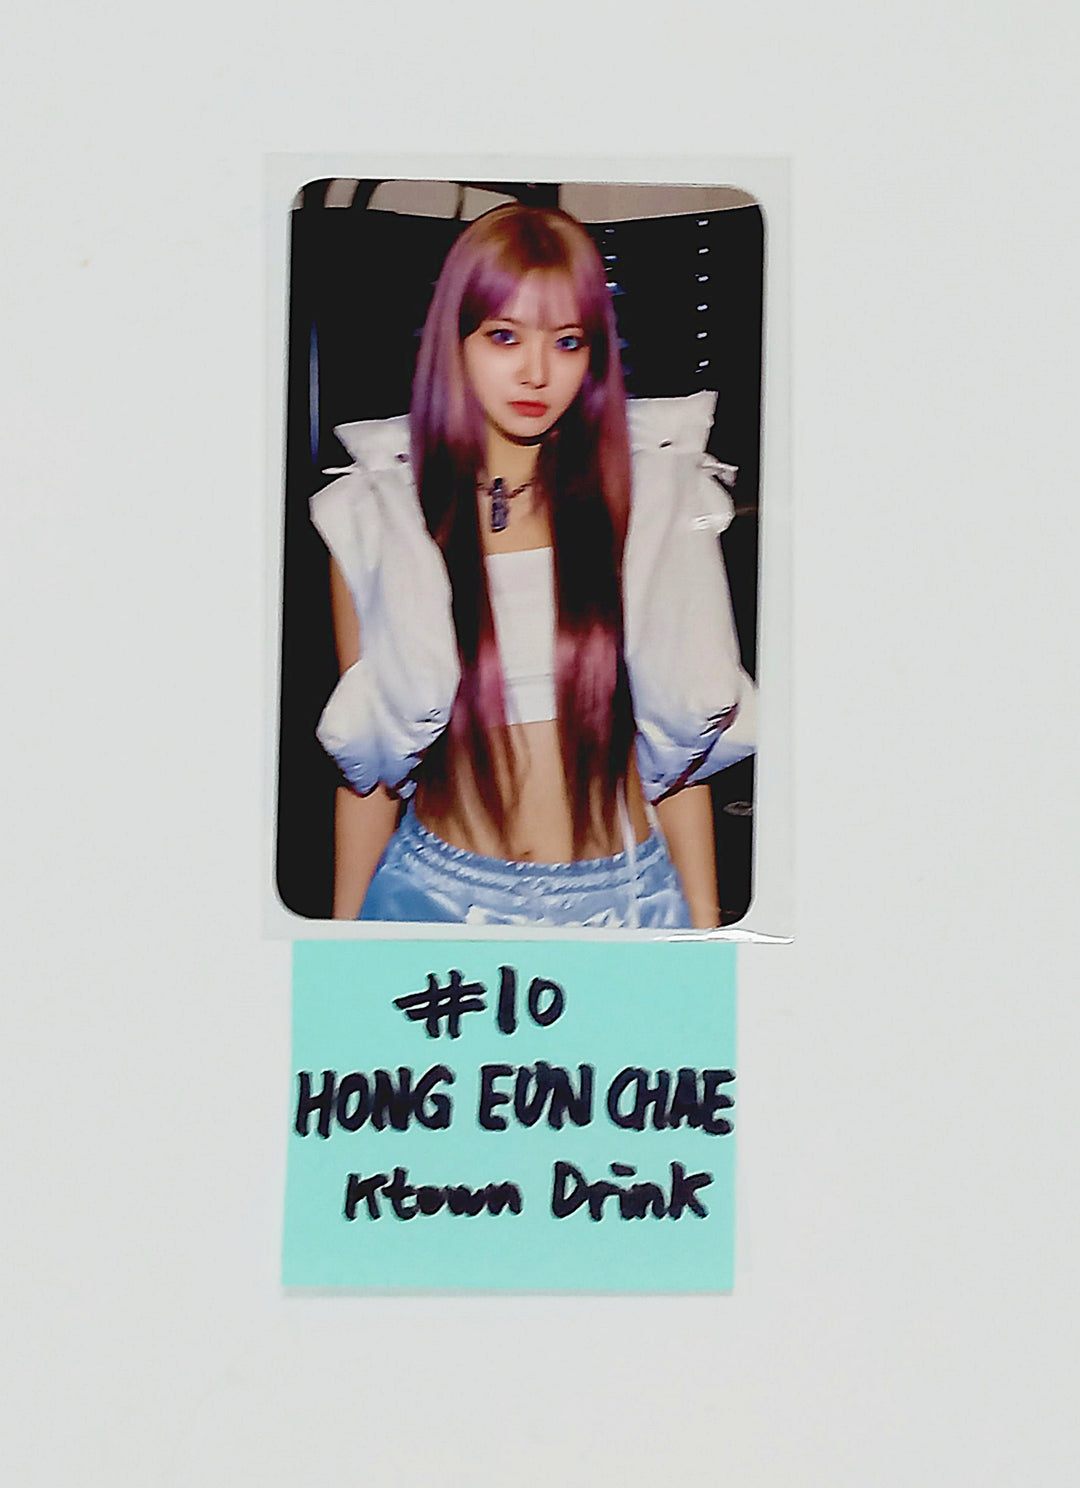 Le Sserafim 3rd Mini "EASY" - Ktown4U Lucky Draw Event & Drink Event Photocard [24.02.20]